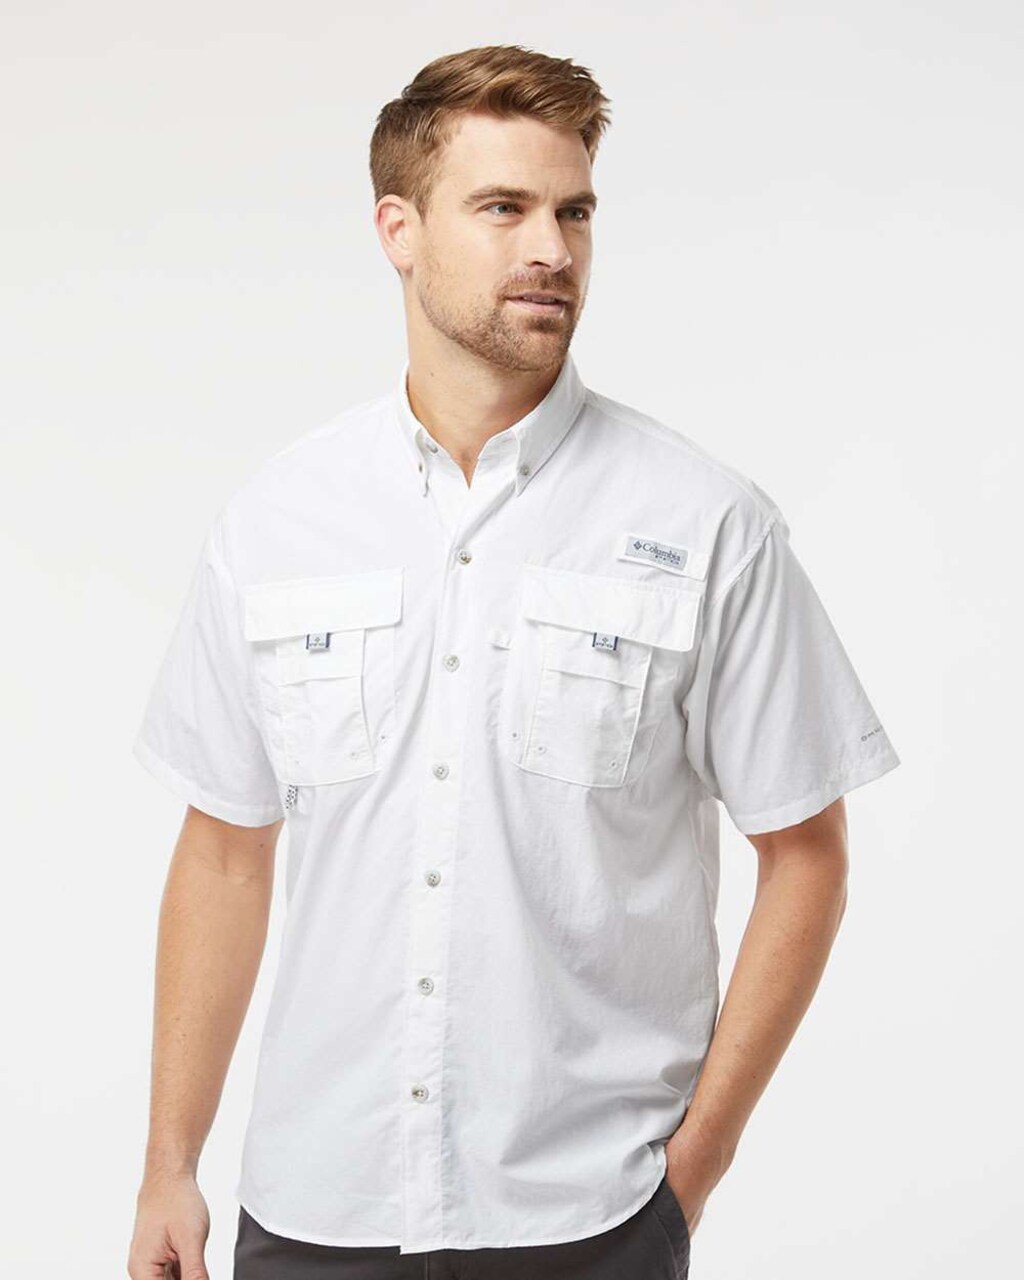 Columbia - PFG Bahama II Short Sleeve Shirt, Stylish short sleeve